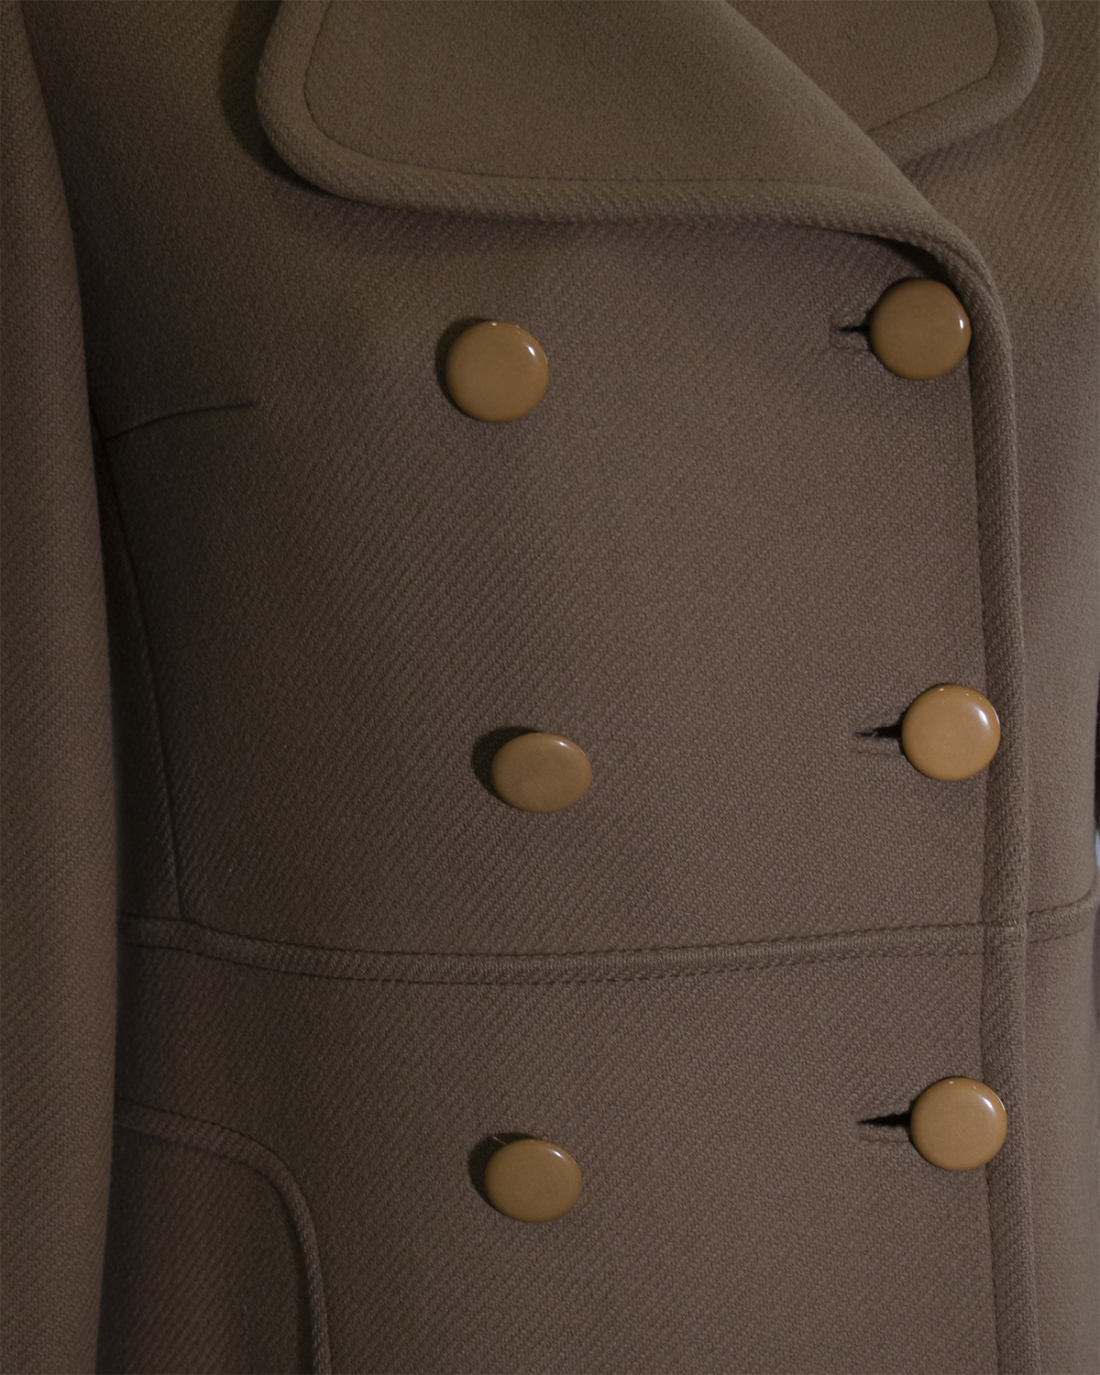 Pierre Cardin Wool Brown Coat from 1970s